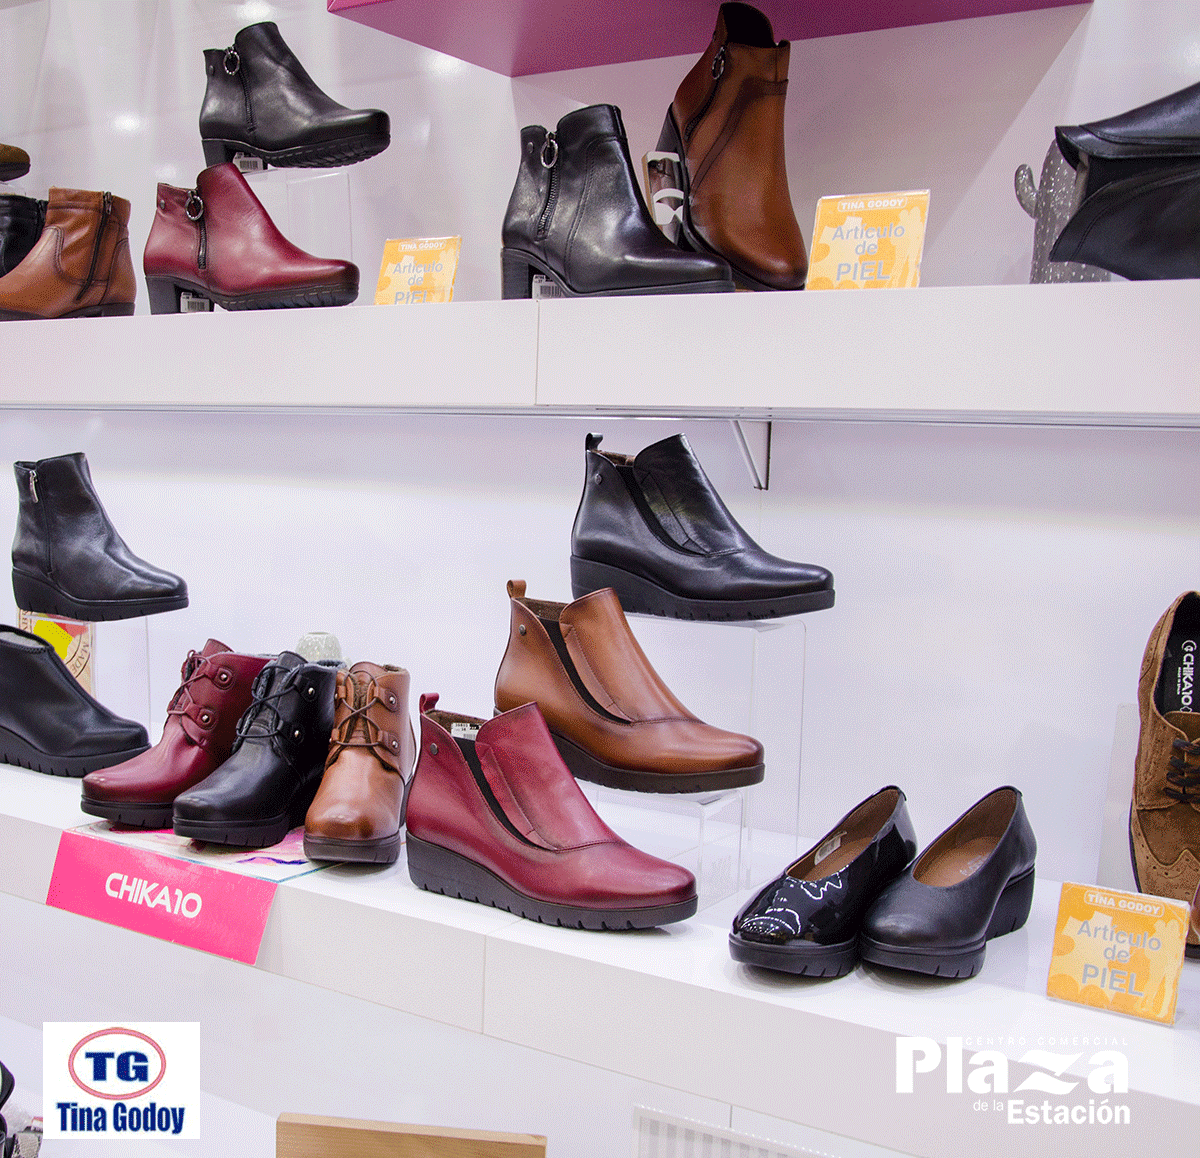 Plaza de la Estación on Twitter: "👠👢¡Encuentra todas las en moda y calzado en Zapaterías Tina Godoy ! ¡Ven a nuestra zapatería del #CentroPlazaDeLaEstación y descubre propia marca de zapatos #